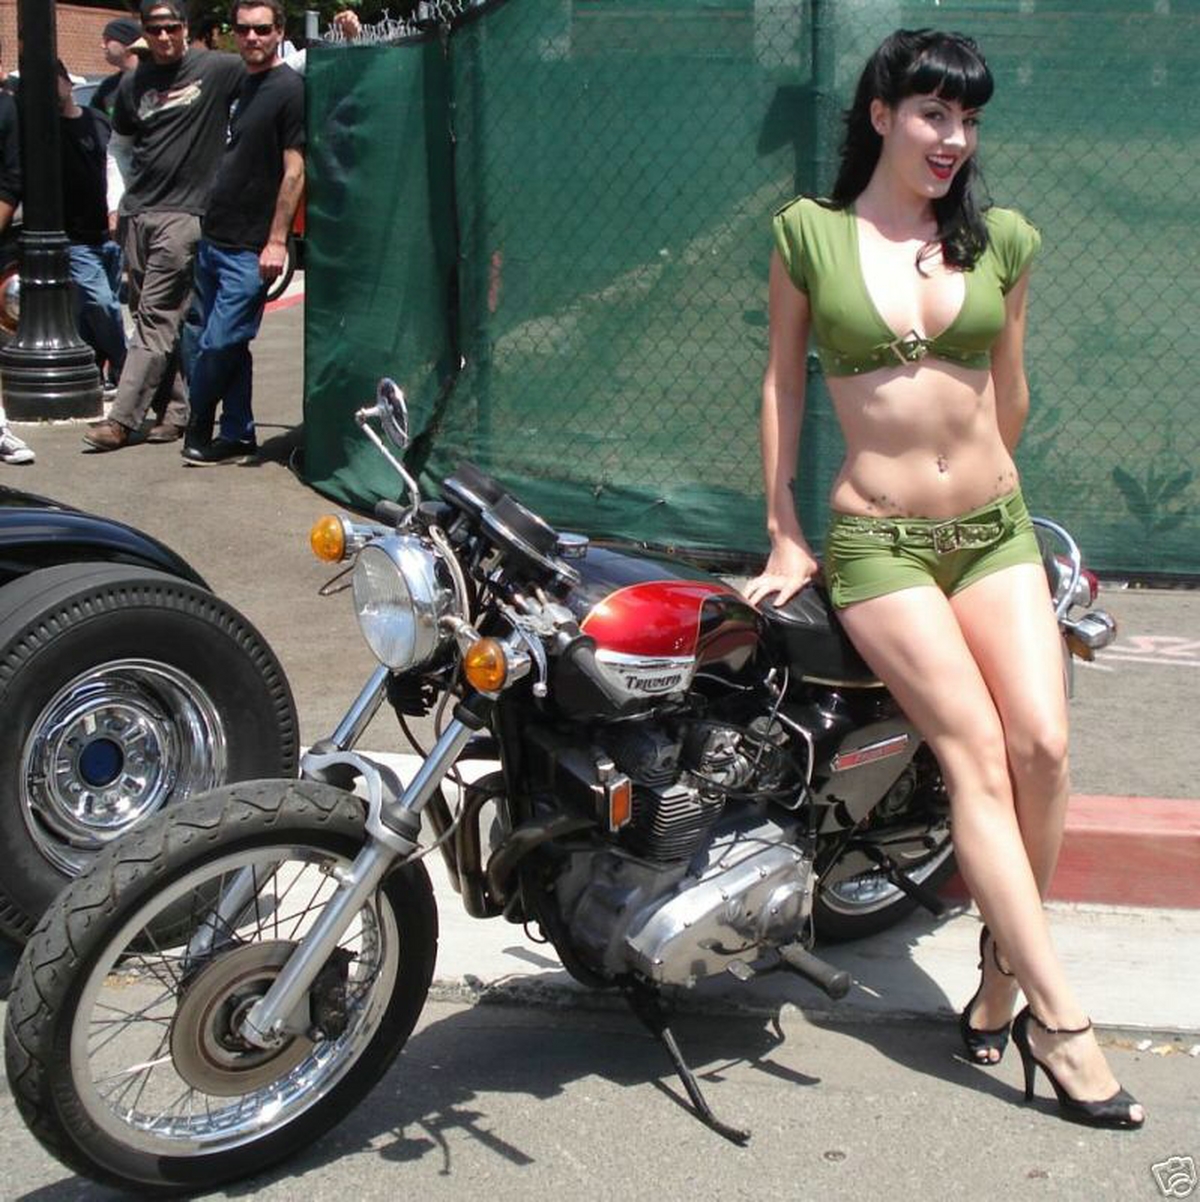 http://galz4boyz.files.wordpress.com/2009/12/biker-girls-10.jpg